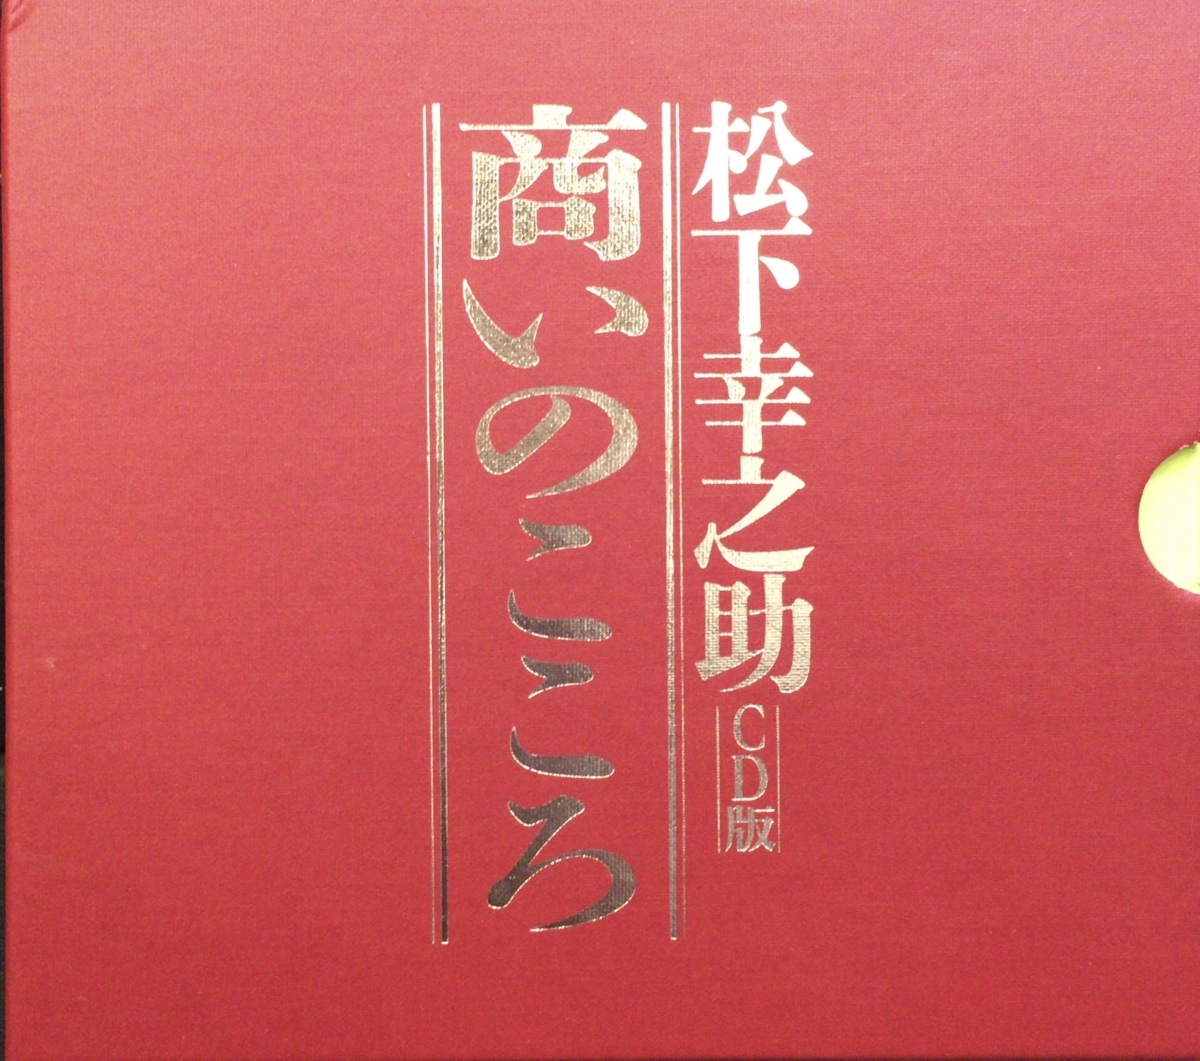 3枚組CD-BOX『松下幸之助 商いのこころ』PHP www.chance.org.br